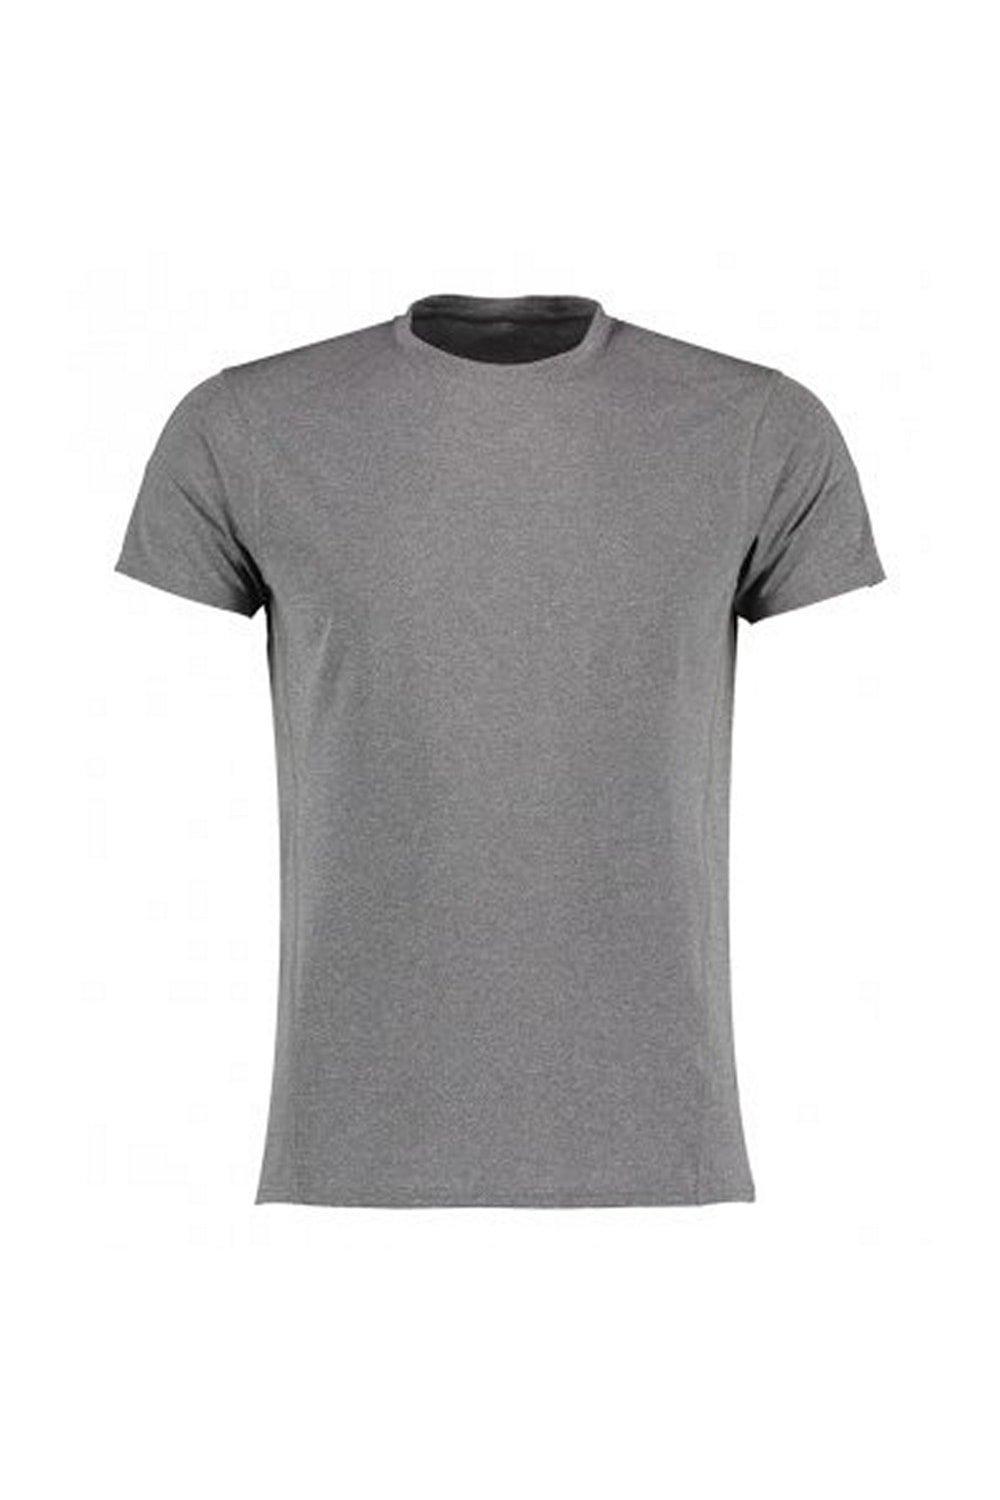 Компактная эластичная футболка Performance Gamegear, серый